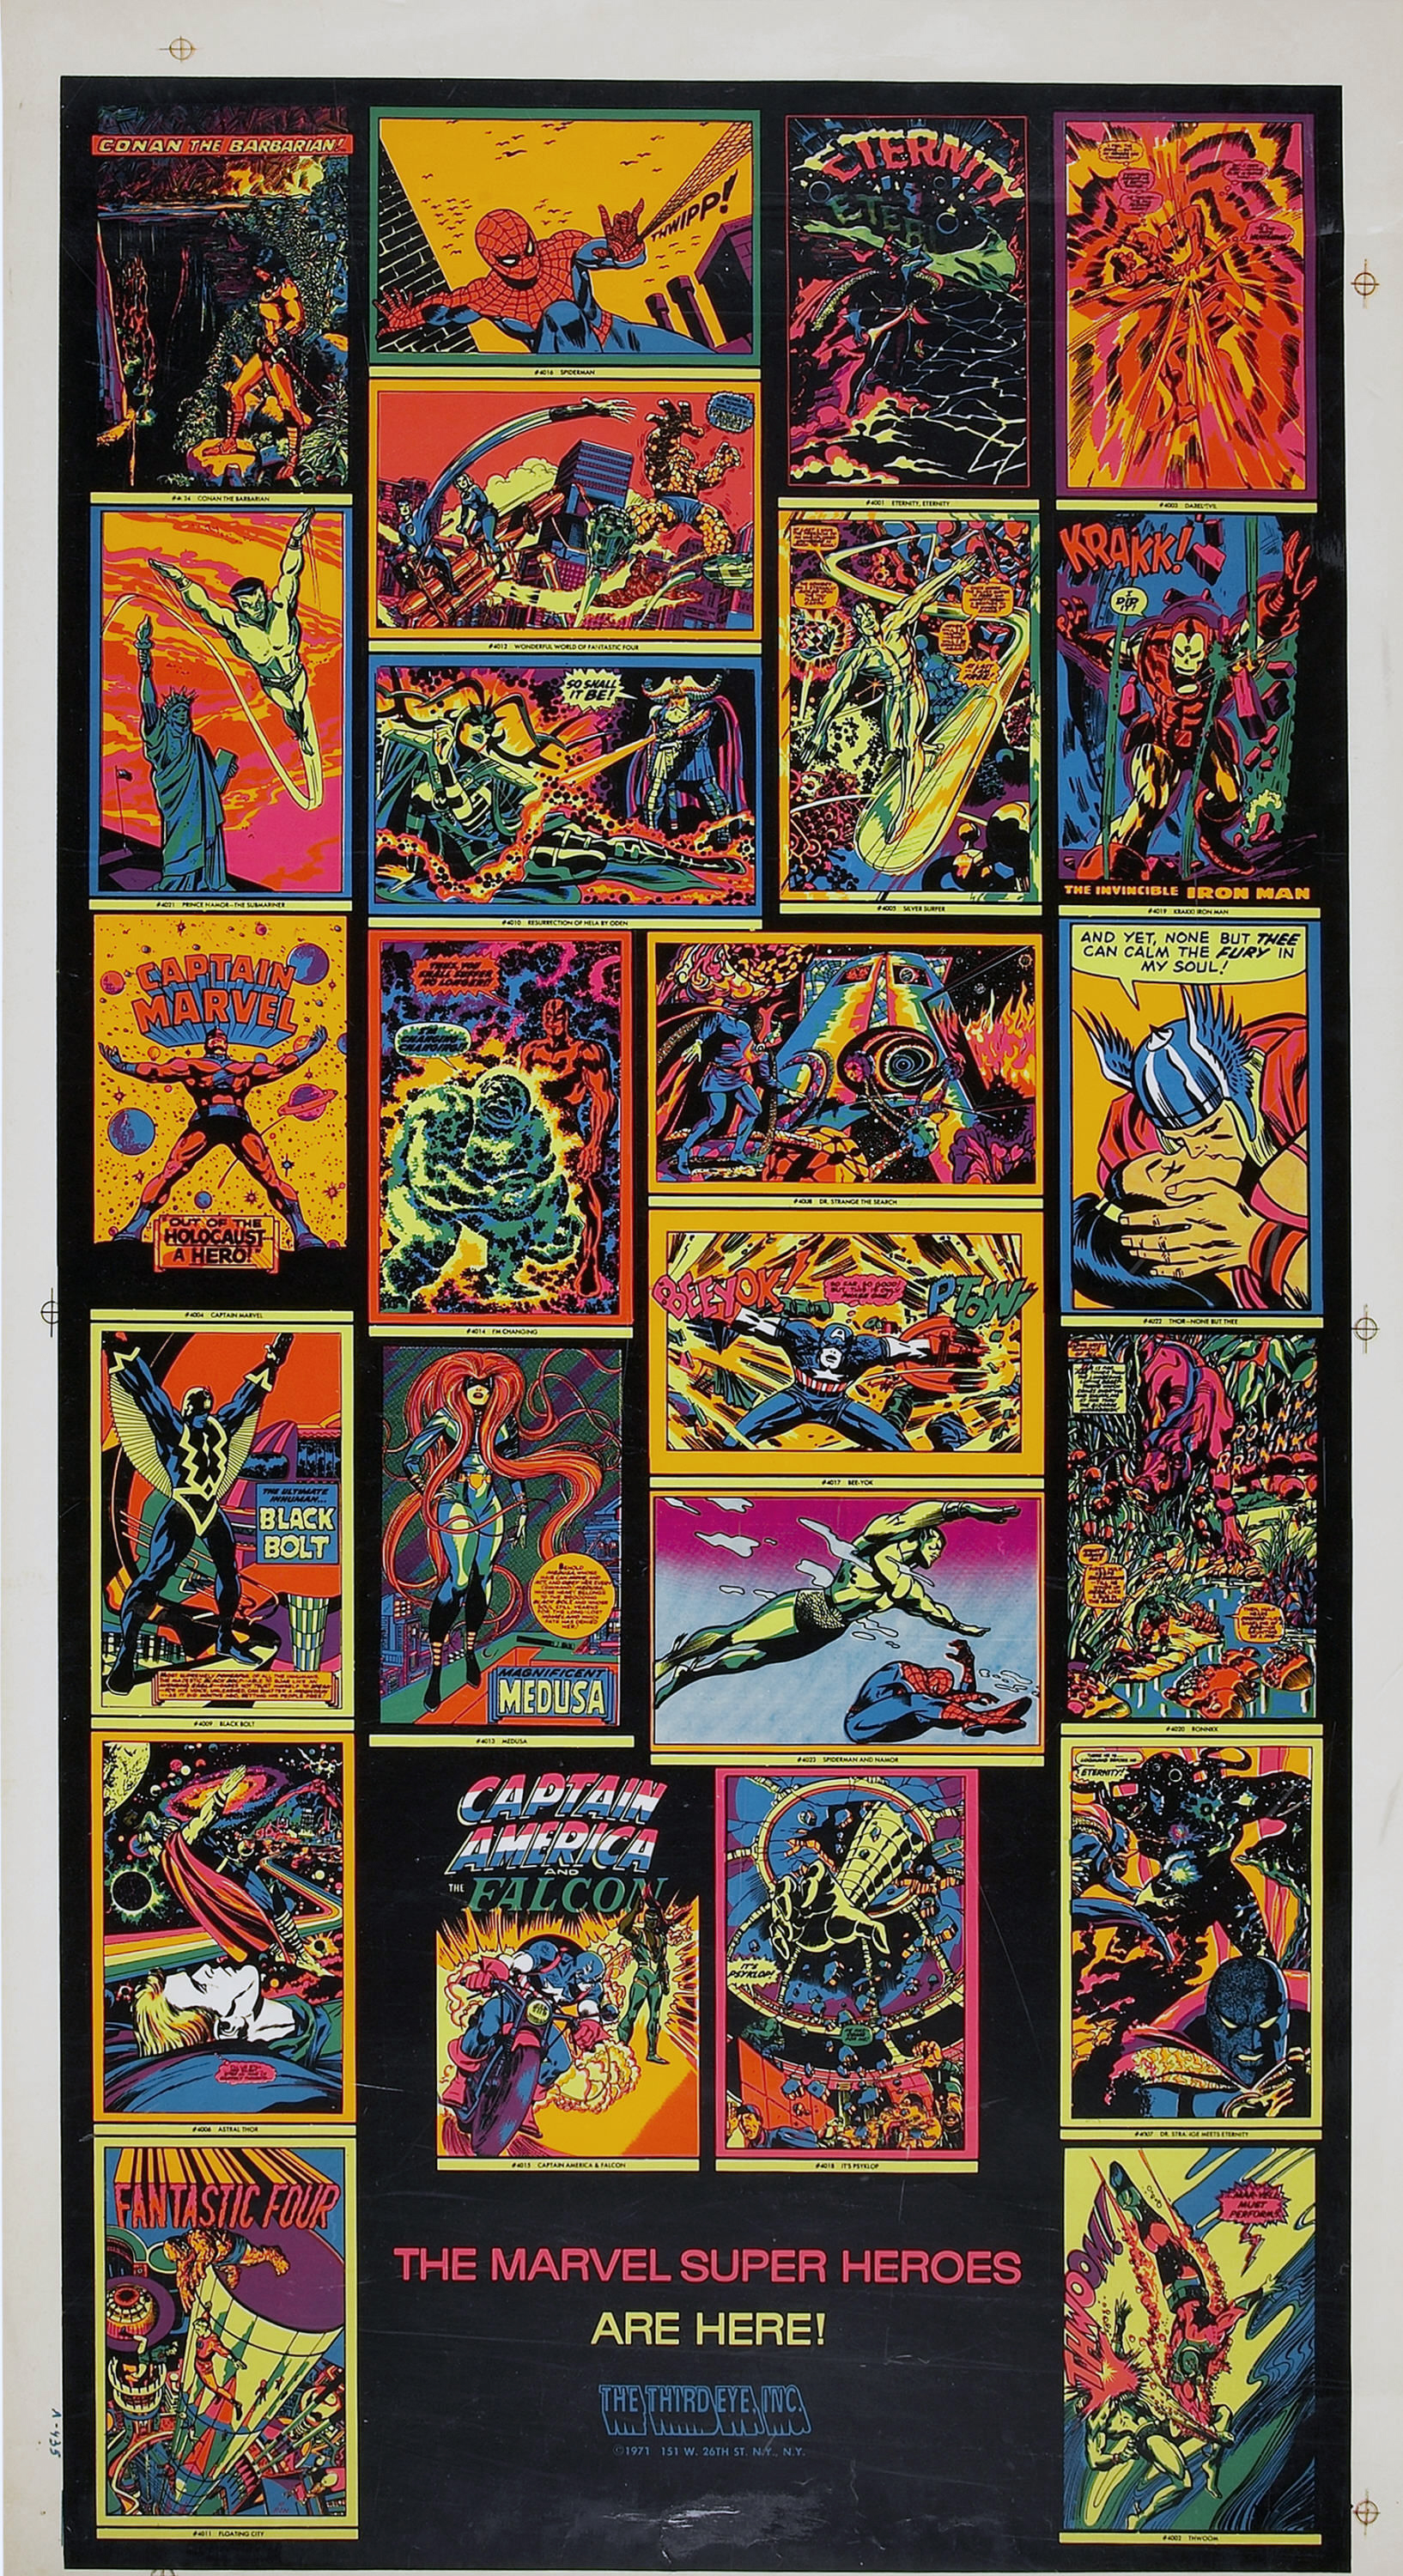 US-Vorlage Captain Marvel Poster